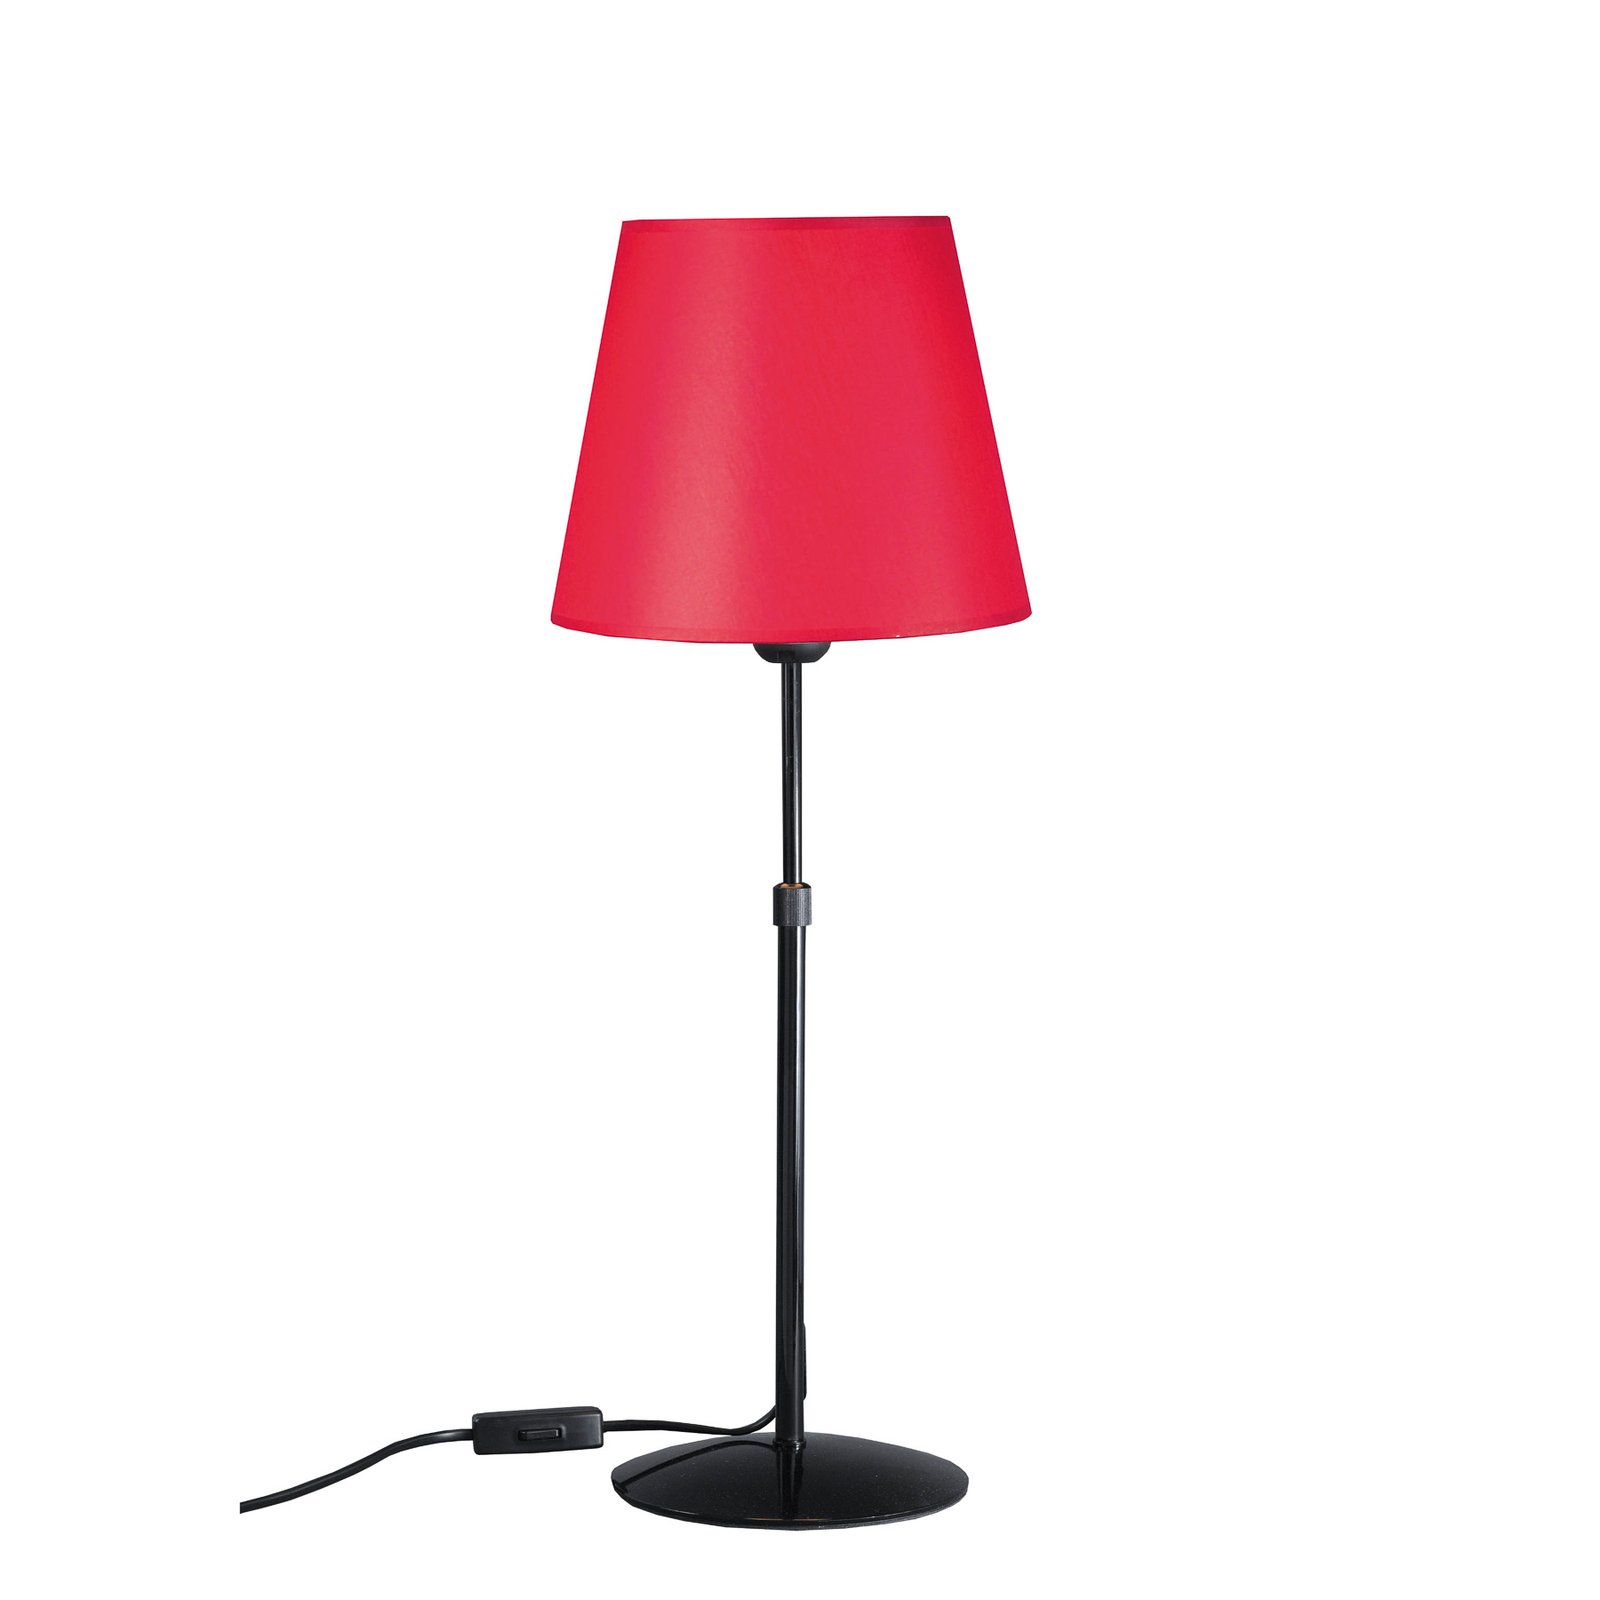 Aluminor Store lampada da tavolo, nero/rosso